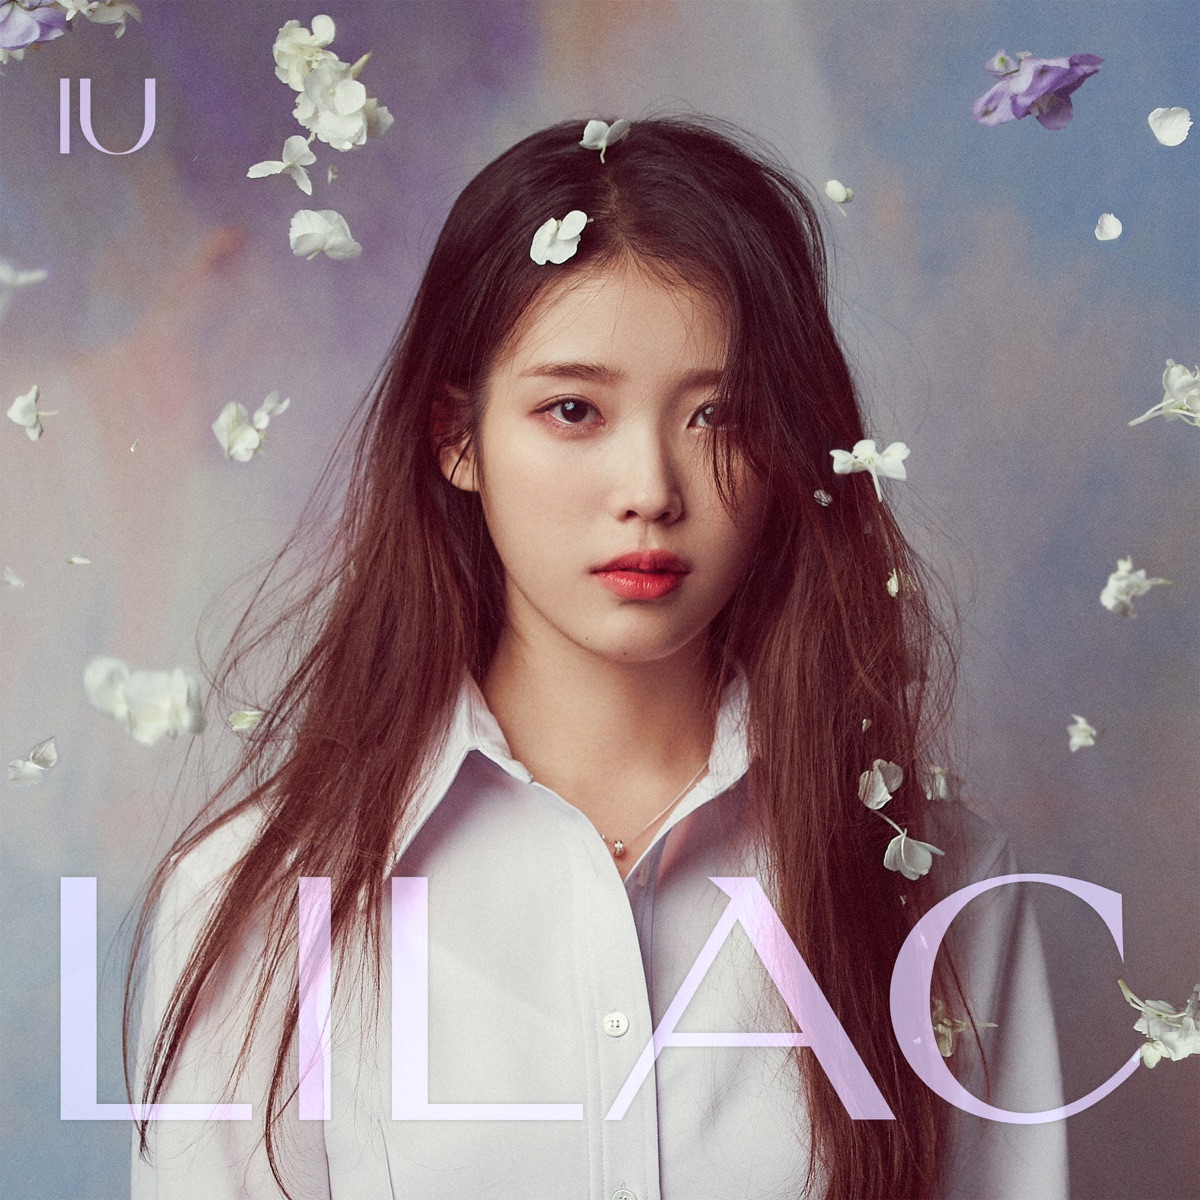 『IU - Empty Cup 歌詞』収録の『IU 5th Album 'Lilac'』ジャケット